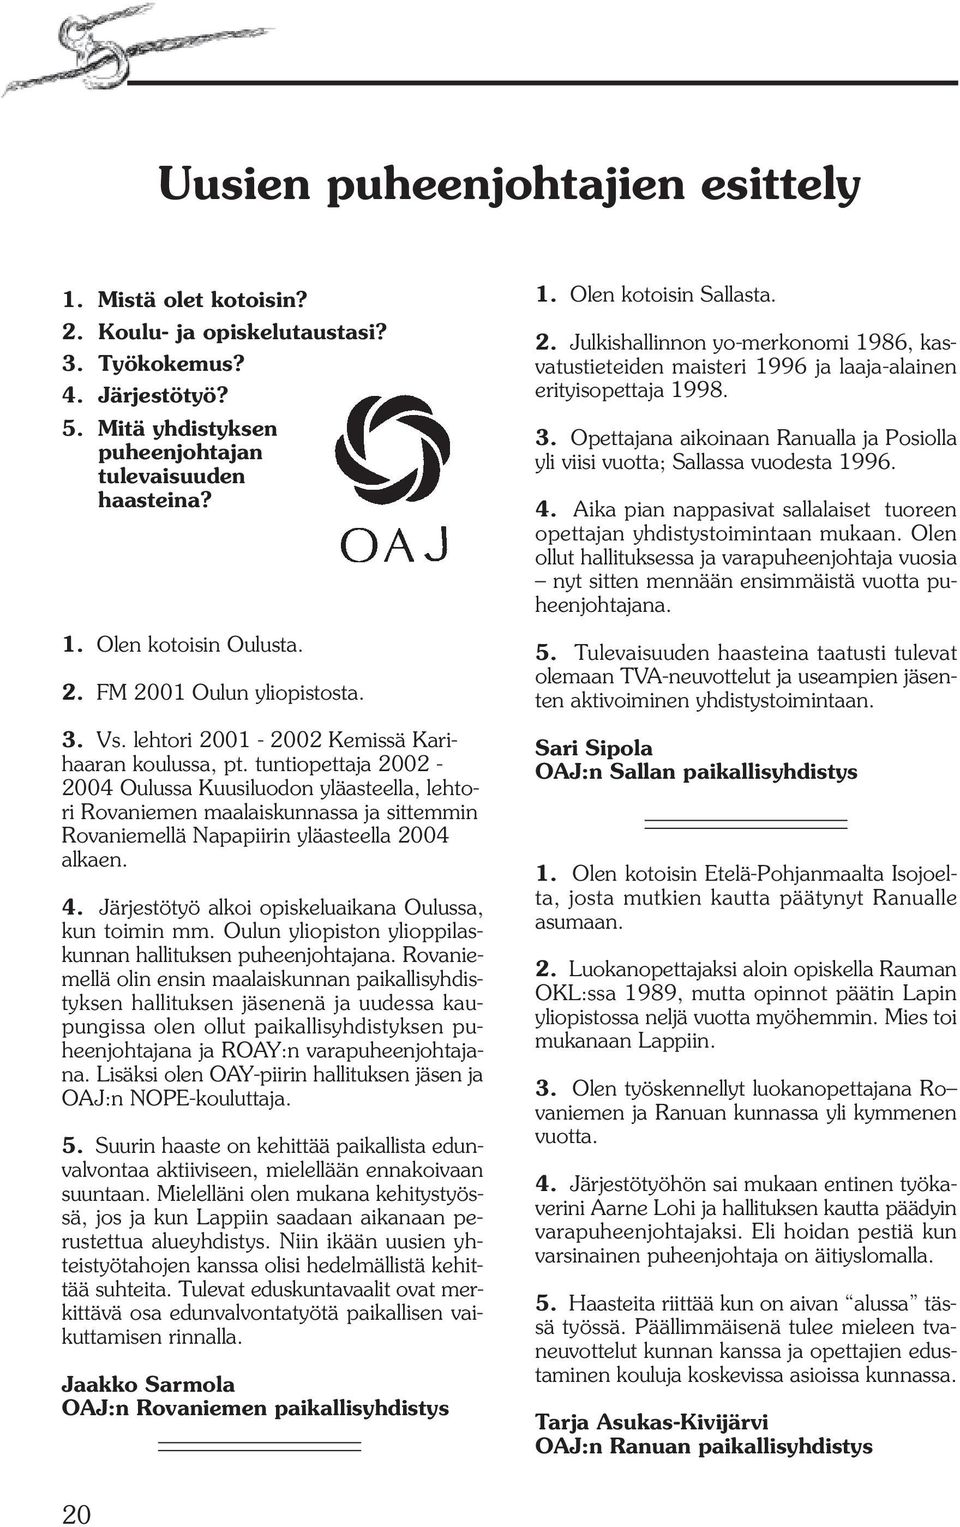 tuntiopettaja 2002-2004 Oulussa Kuusiluodon yläasteella, lehtori Rovaniemen maalaiskunnassa ja sittemmin Rovaniemellä Napapiirin yläasteella 2004 alkaen. 4.